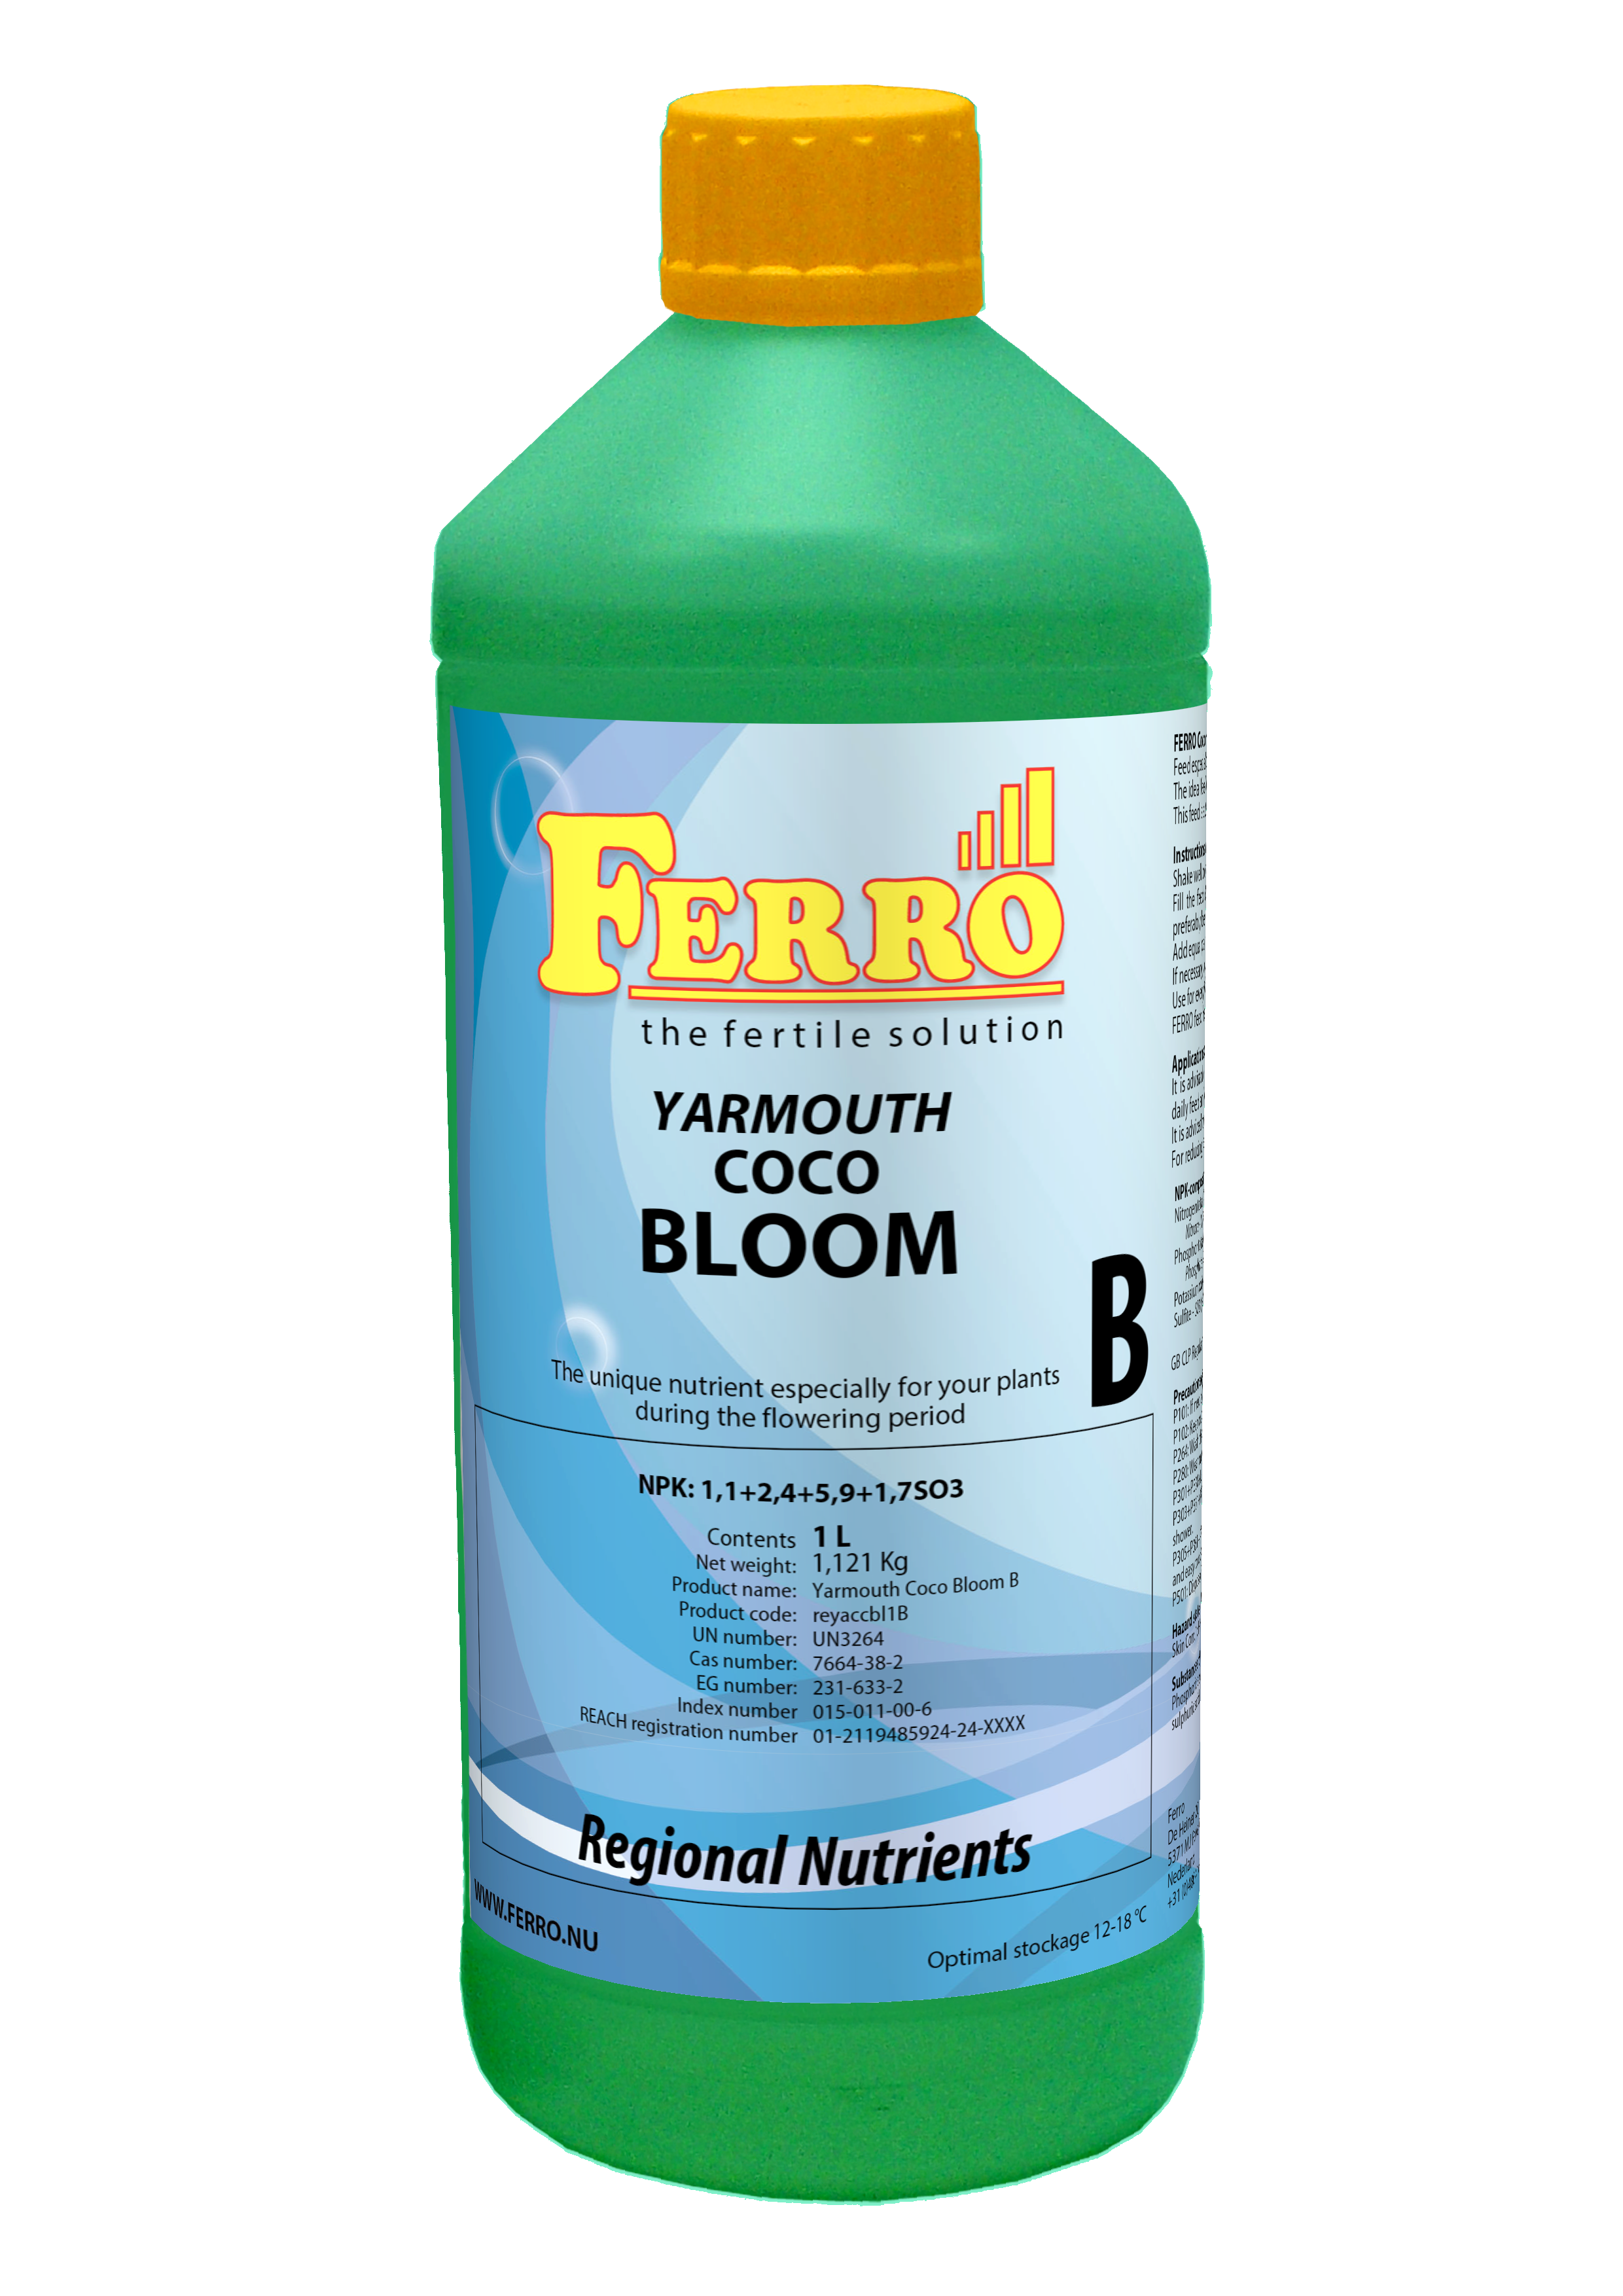 Ferro Coco Bloom Yarmouth A & B Nutrient Set